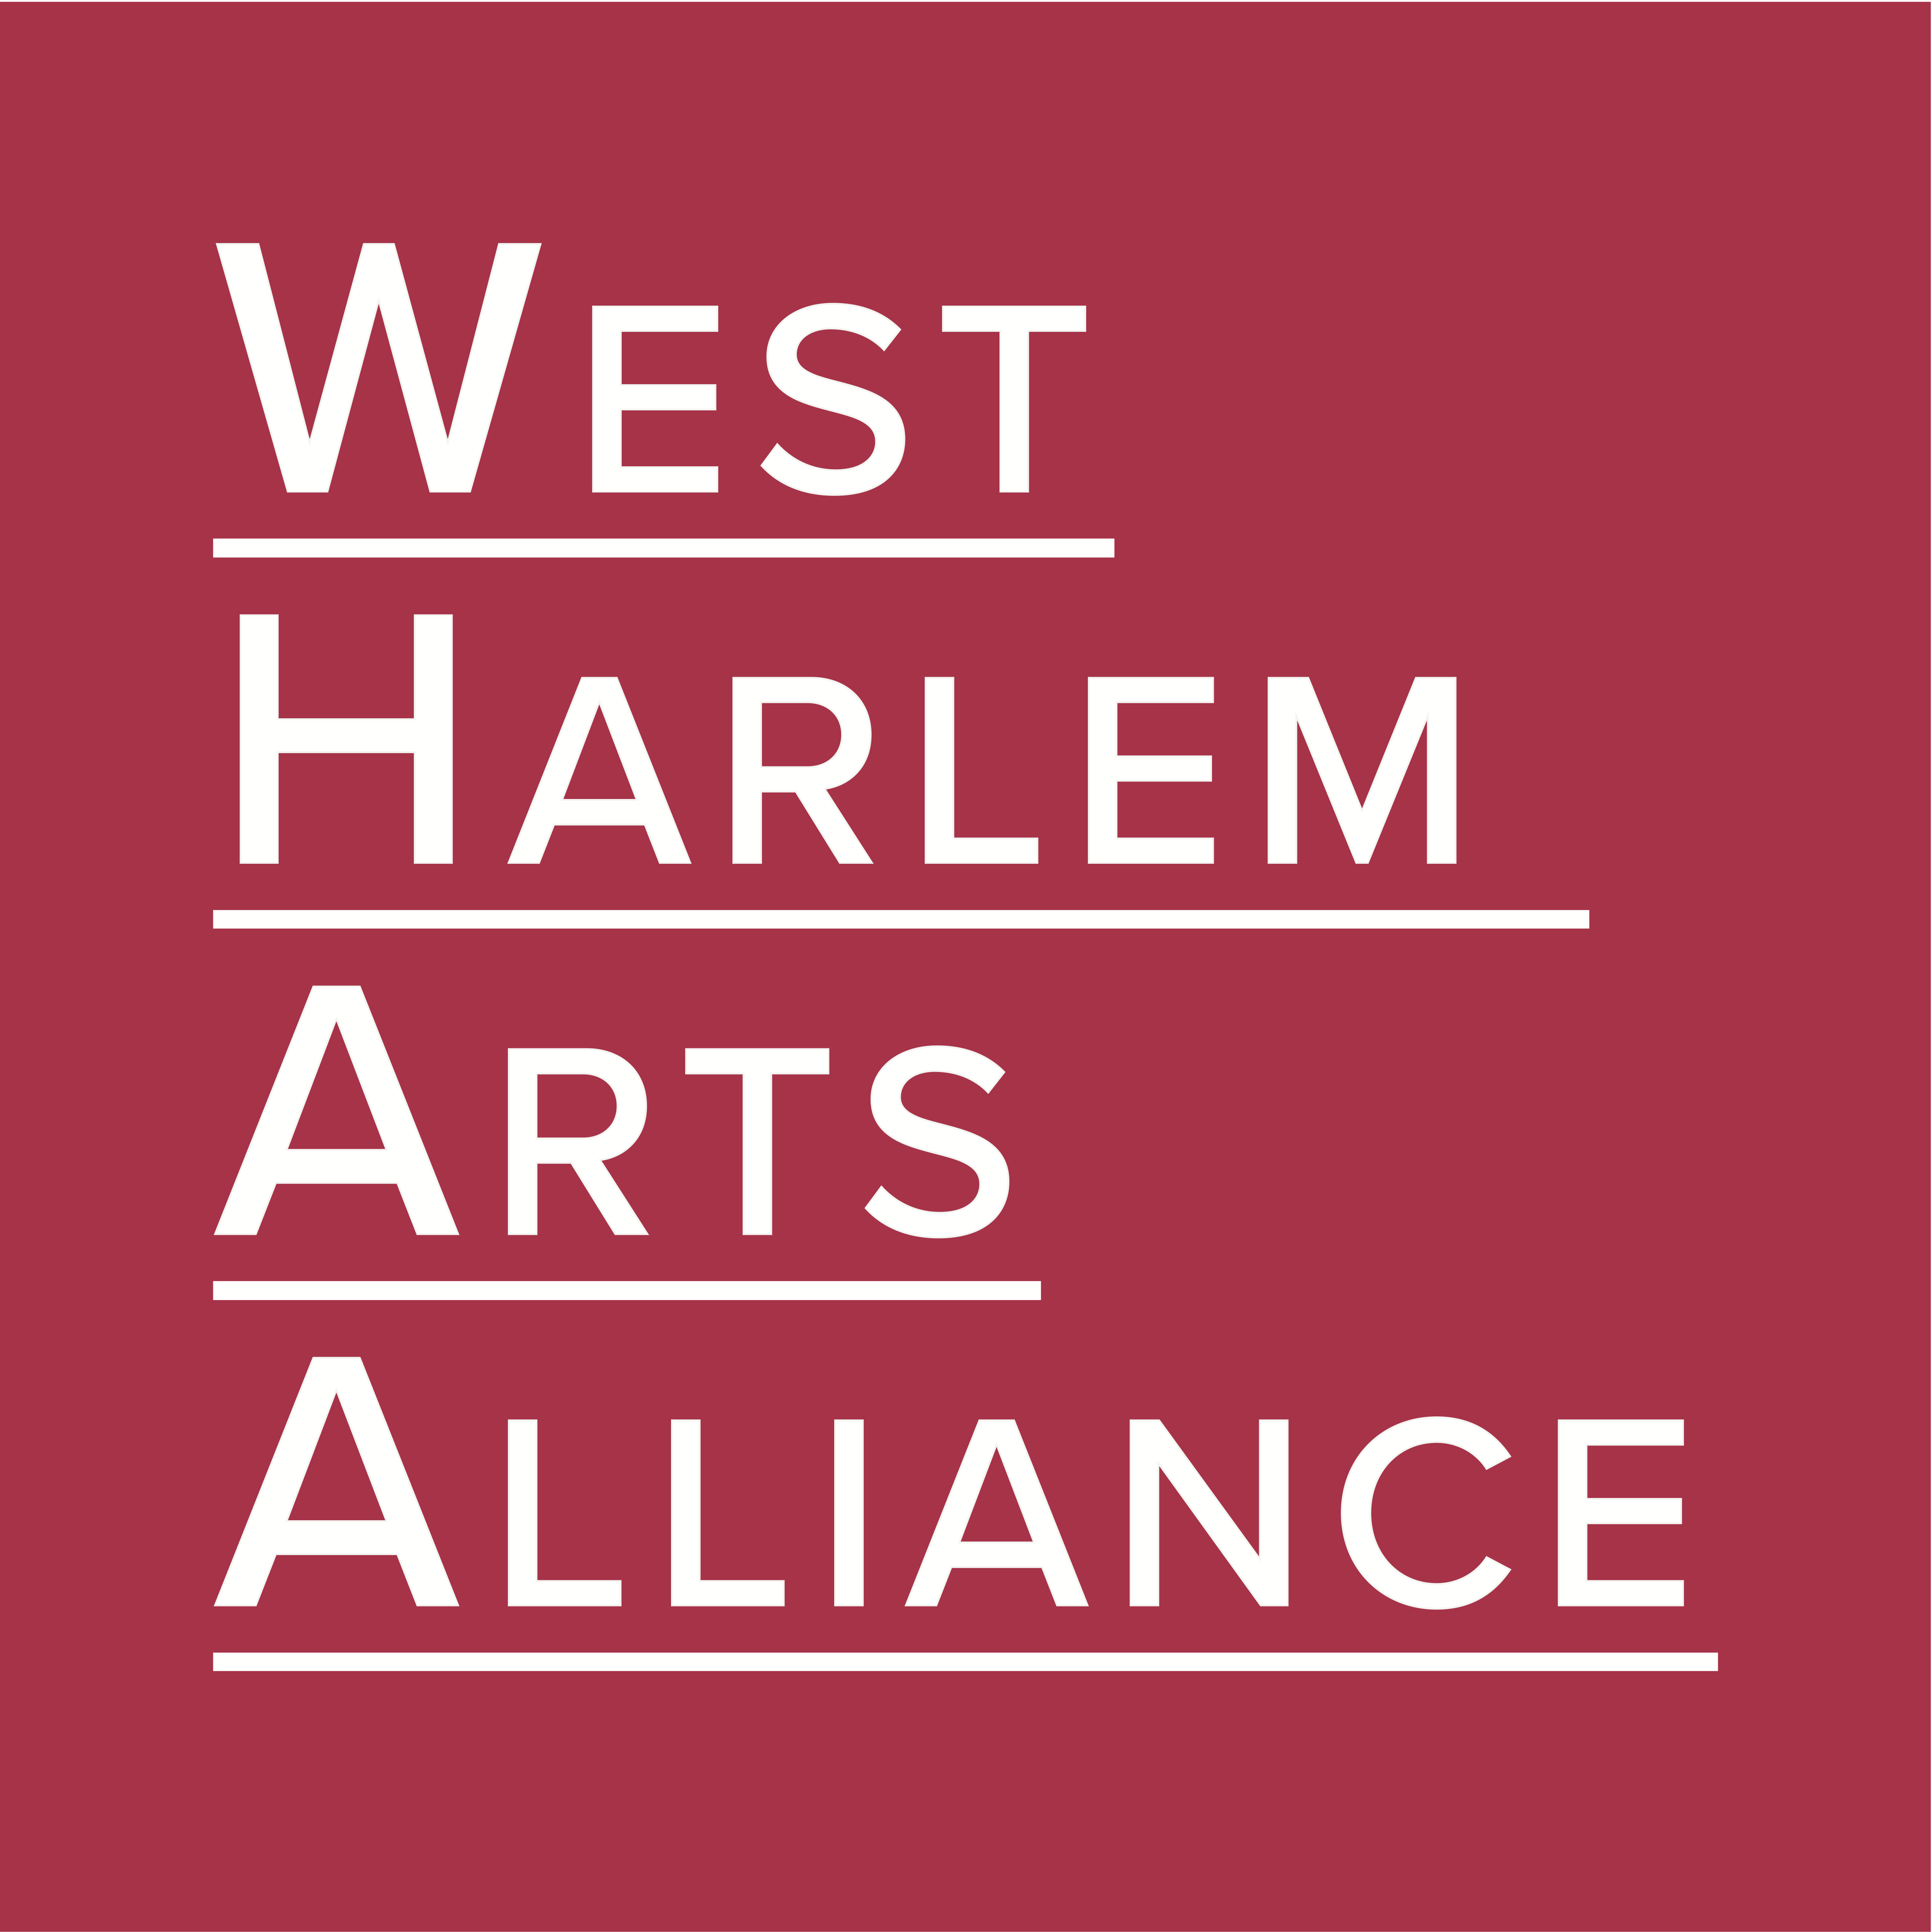 West Harlem Arts Alliance